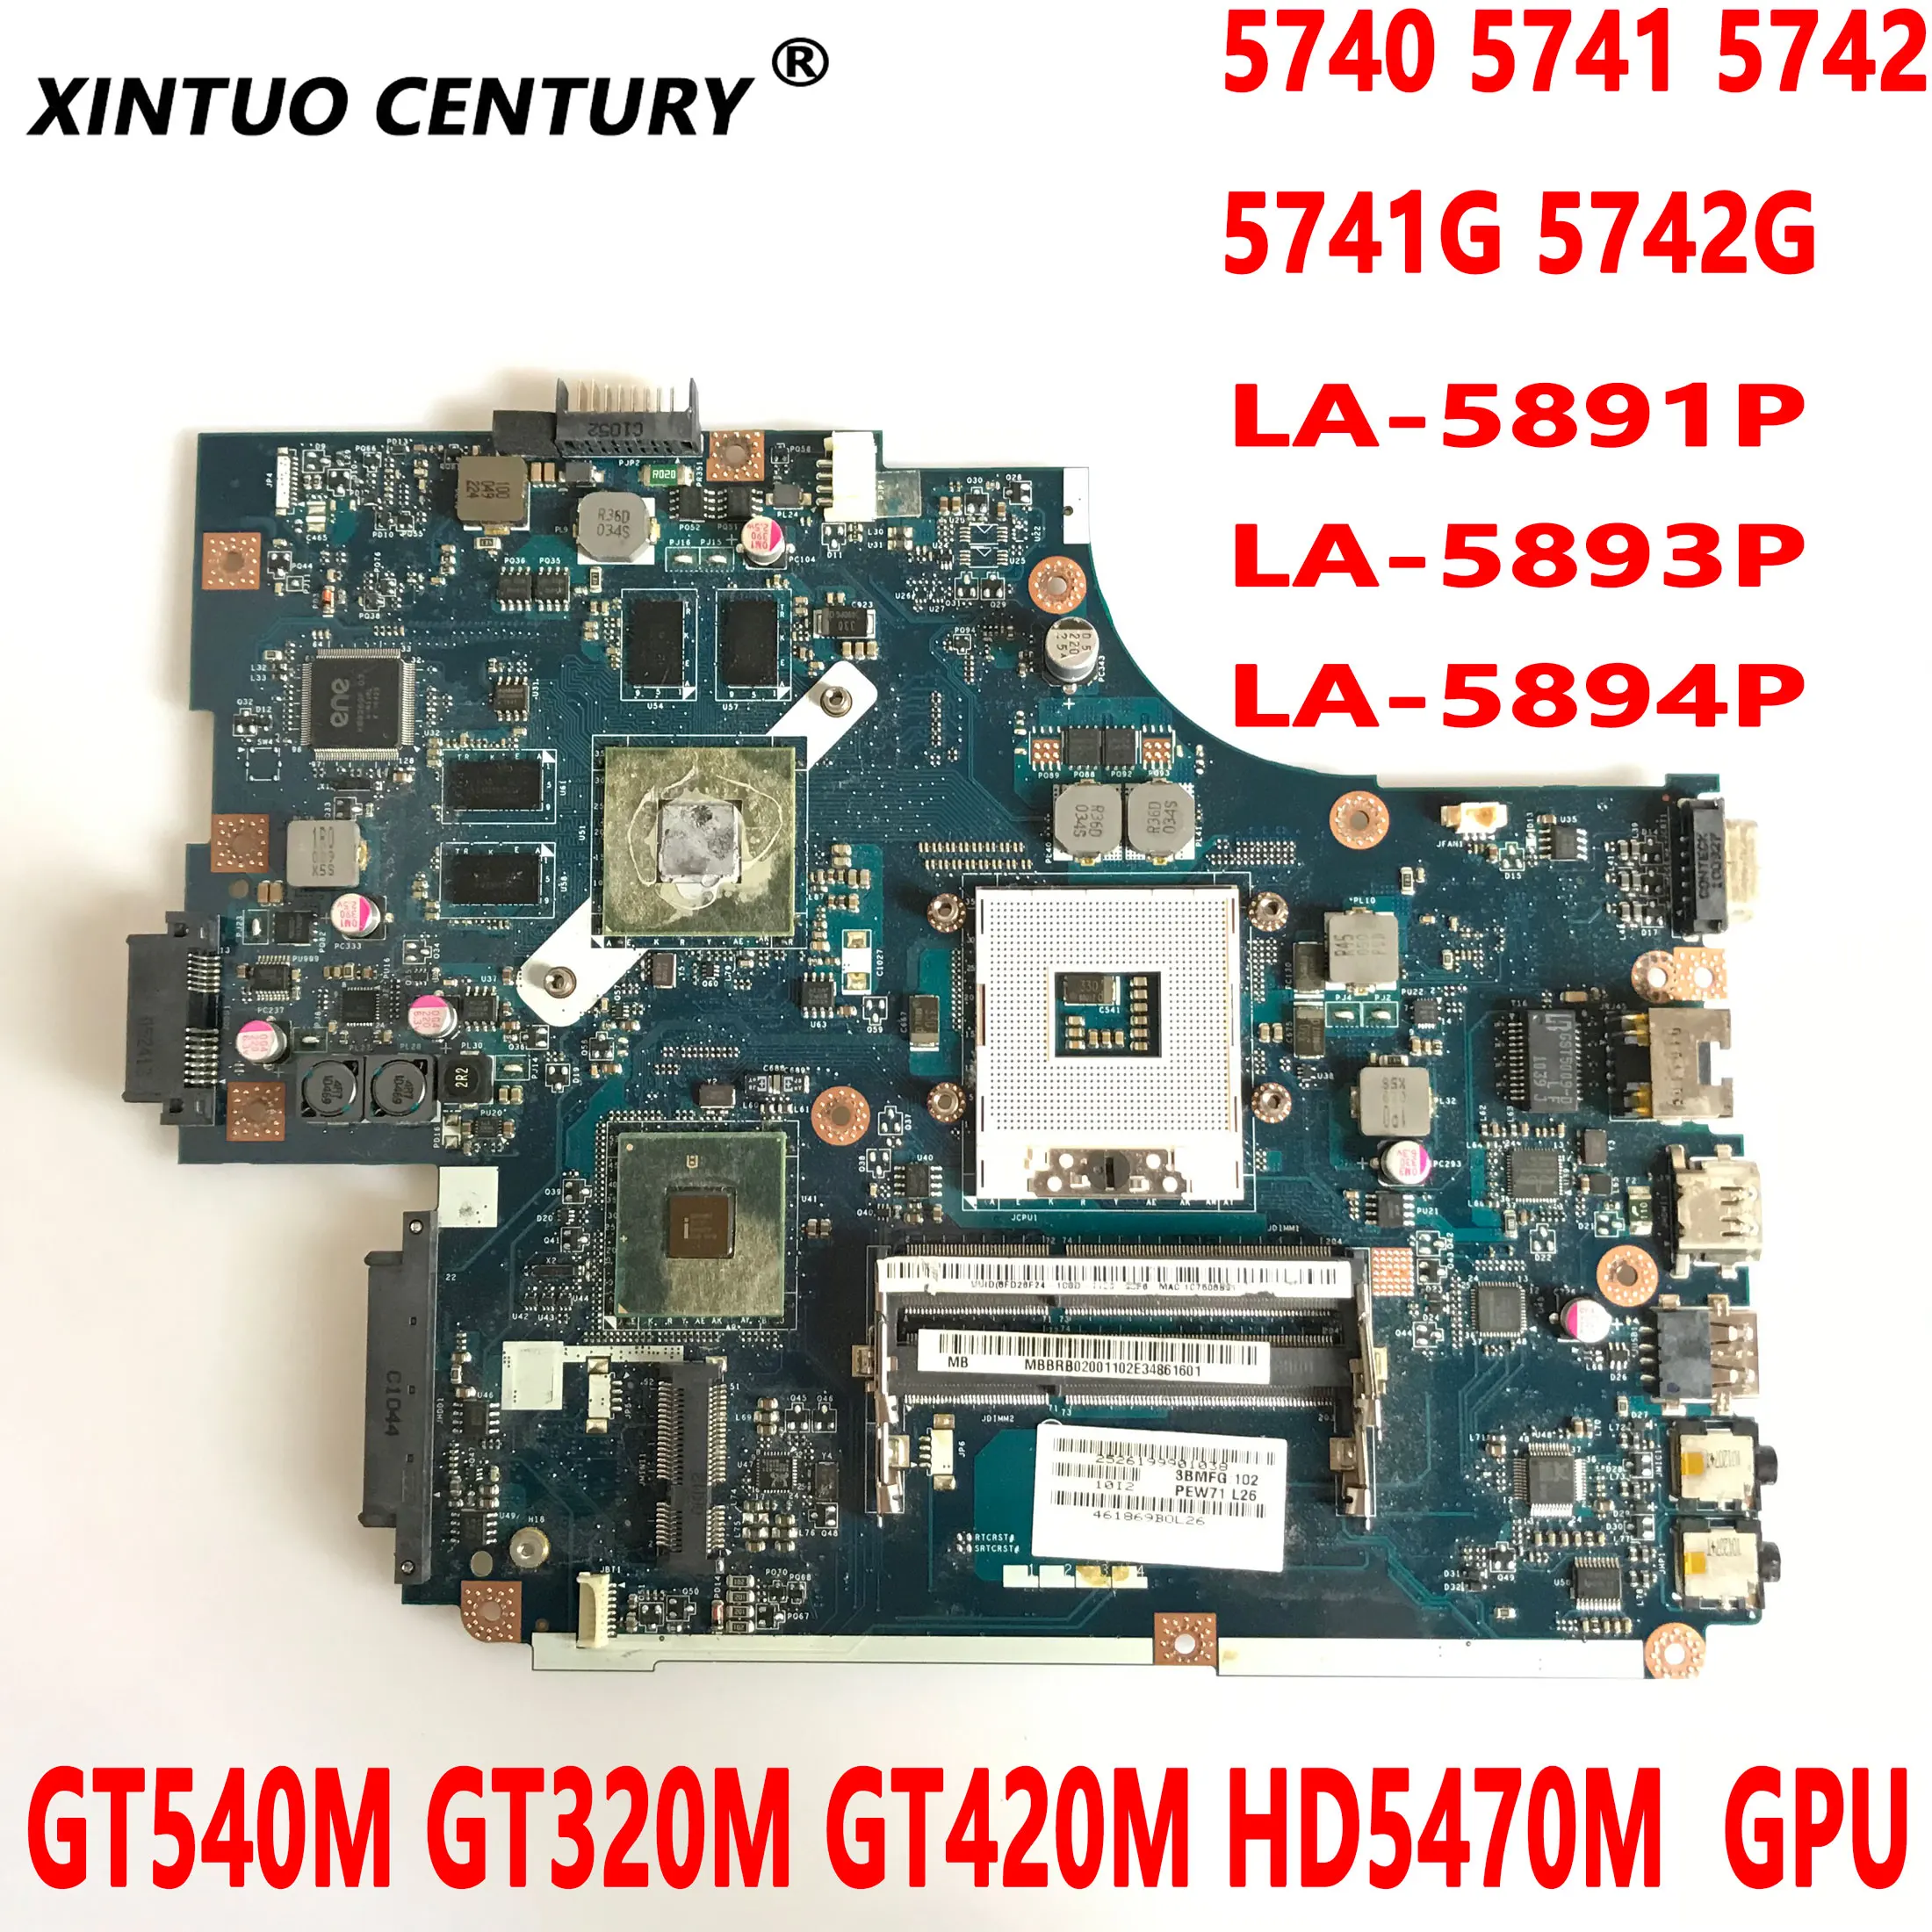 LA-5891P LA-5893P LA-5894P for Acer 5740 5741 5742 5741G 5742G Laptop Motherboard GT540M GT320M GT420M HD5470M GPU 100% Tested